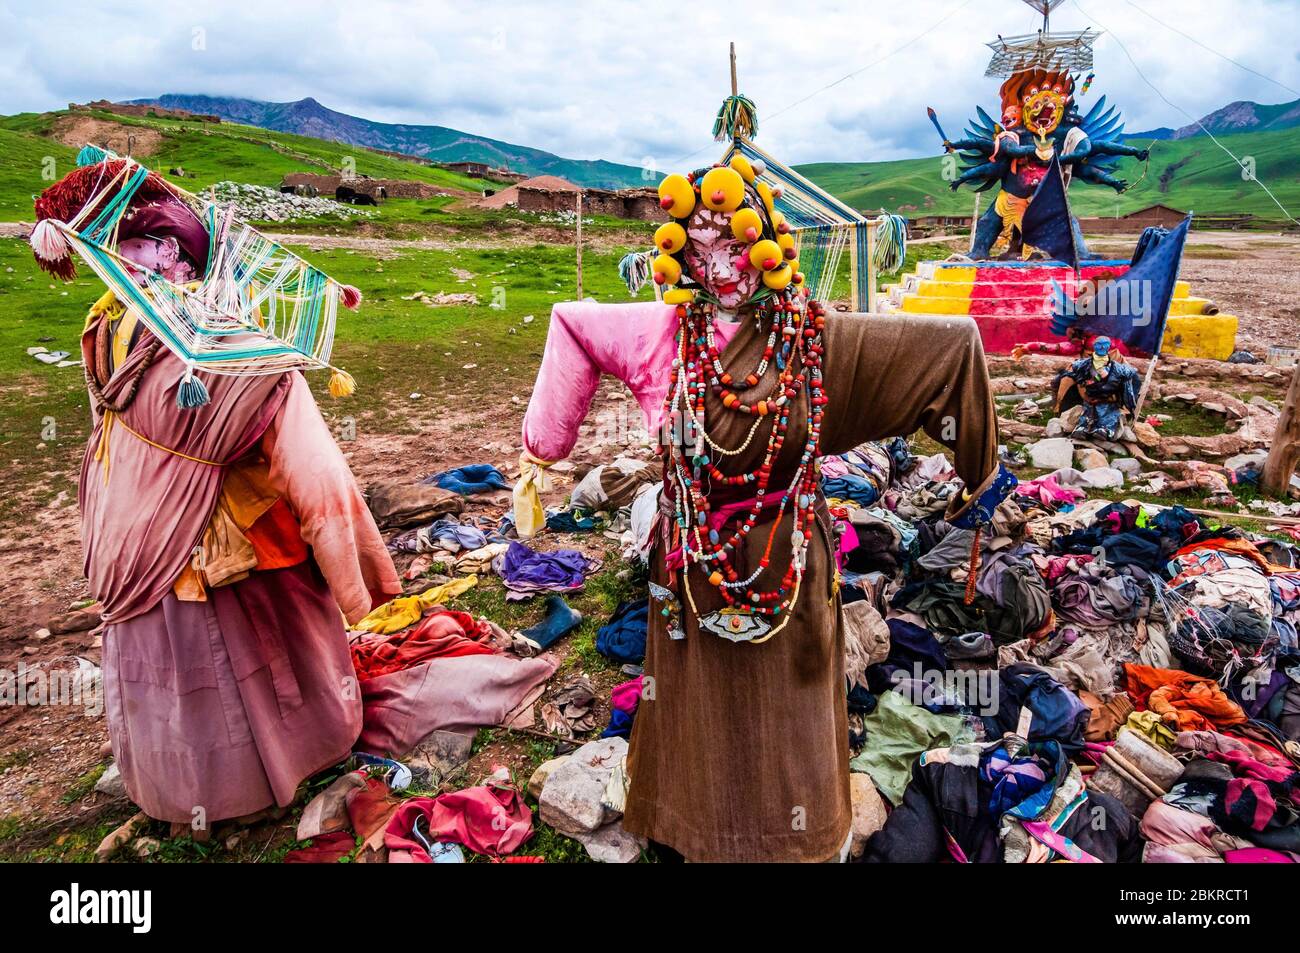 Cina, Tibet orientale, o Kham, Qinghai, Nagchu, monastero di Gar, sito rituale buddista per la preparazione alla morte e la migrazione dell'anima, secondo il Bardo Th?dol, o libro tibetano dei morti, che significa liberazione ascoltando gli stati intermedi Foto Stock